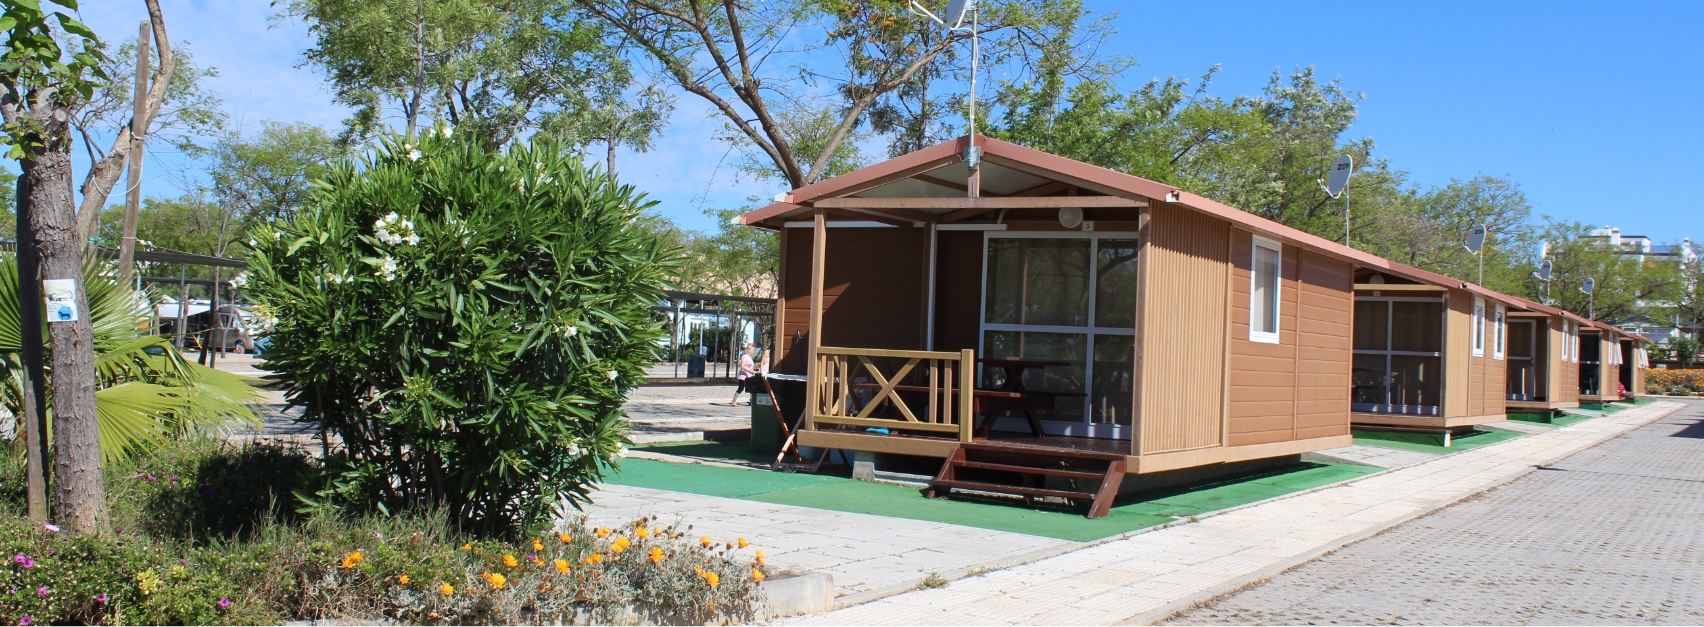 Camping Bungalows - Nuestra oferta de alojamiento en Bungalows - Camping Ria Formosa en Algarve